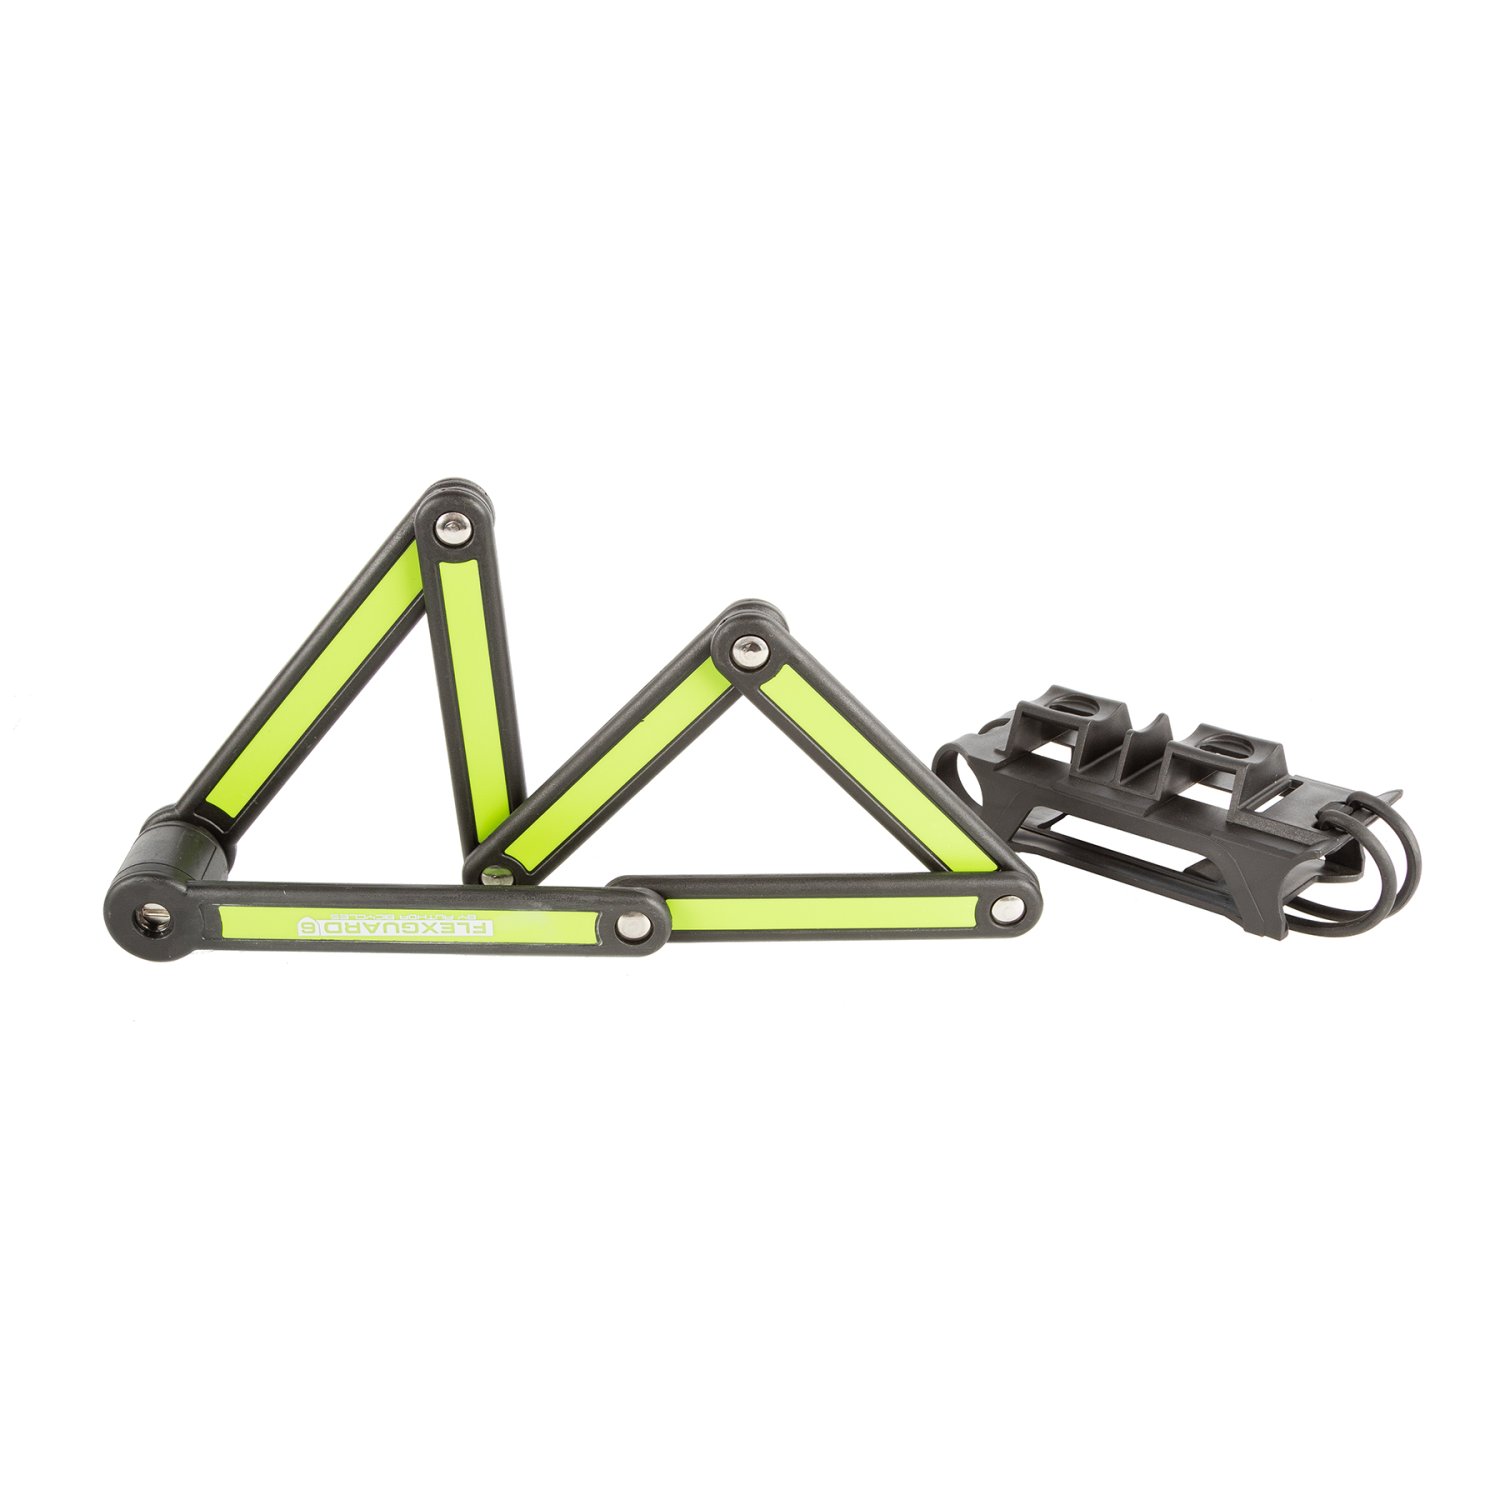 Велосипедный замок AUTHOR AUL FlexGuard-6 сегментный, на ключ, 840 х 3,5мм, черно-зеленый, 8-17064215 ниппель велосипедный dt swiss алюминий 2 0 x 12 мм 20 гр зеленый dt nip 2 0x12mm alu grn